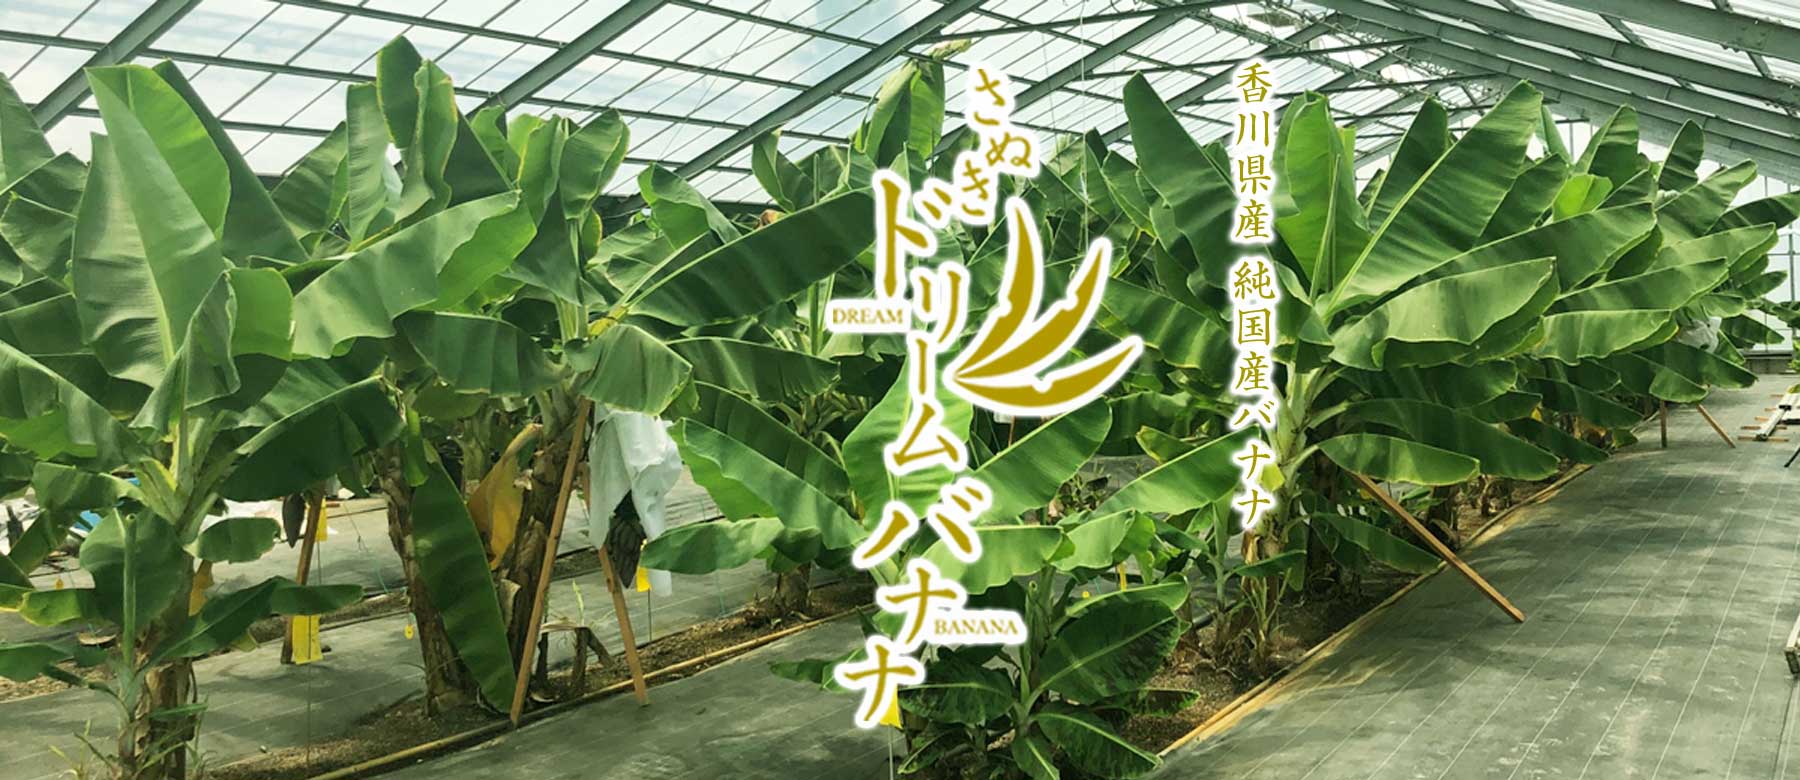 香川県産 純国産バナナ さぬきドリームバナナ